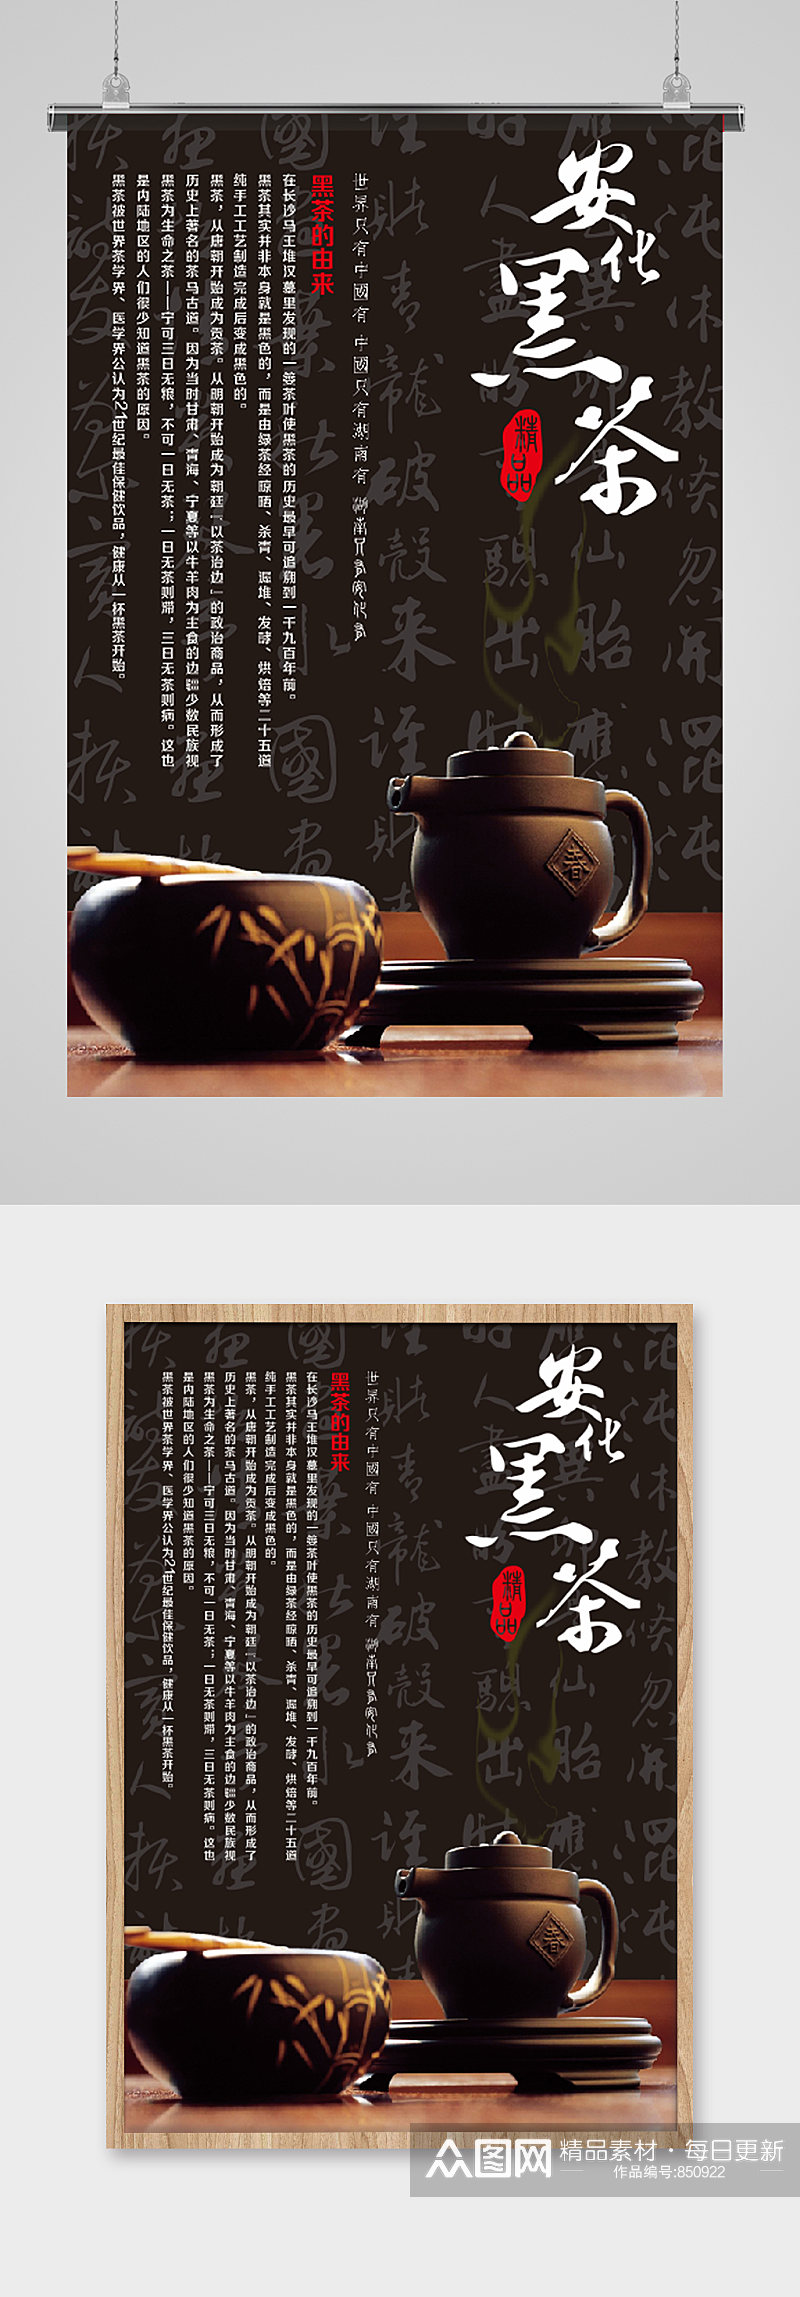 安化黑茶文化海报设计素材